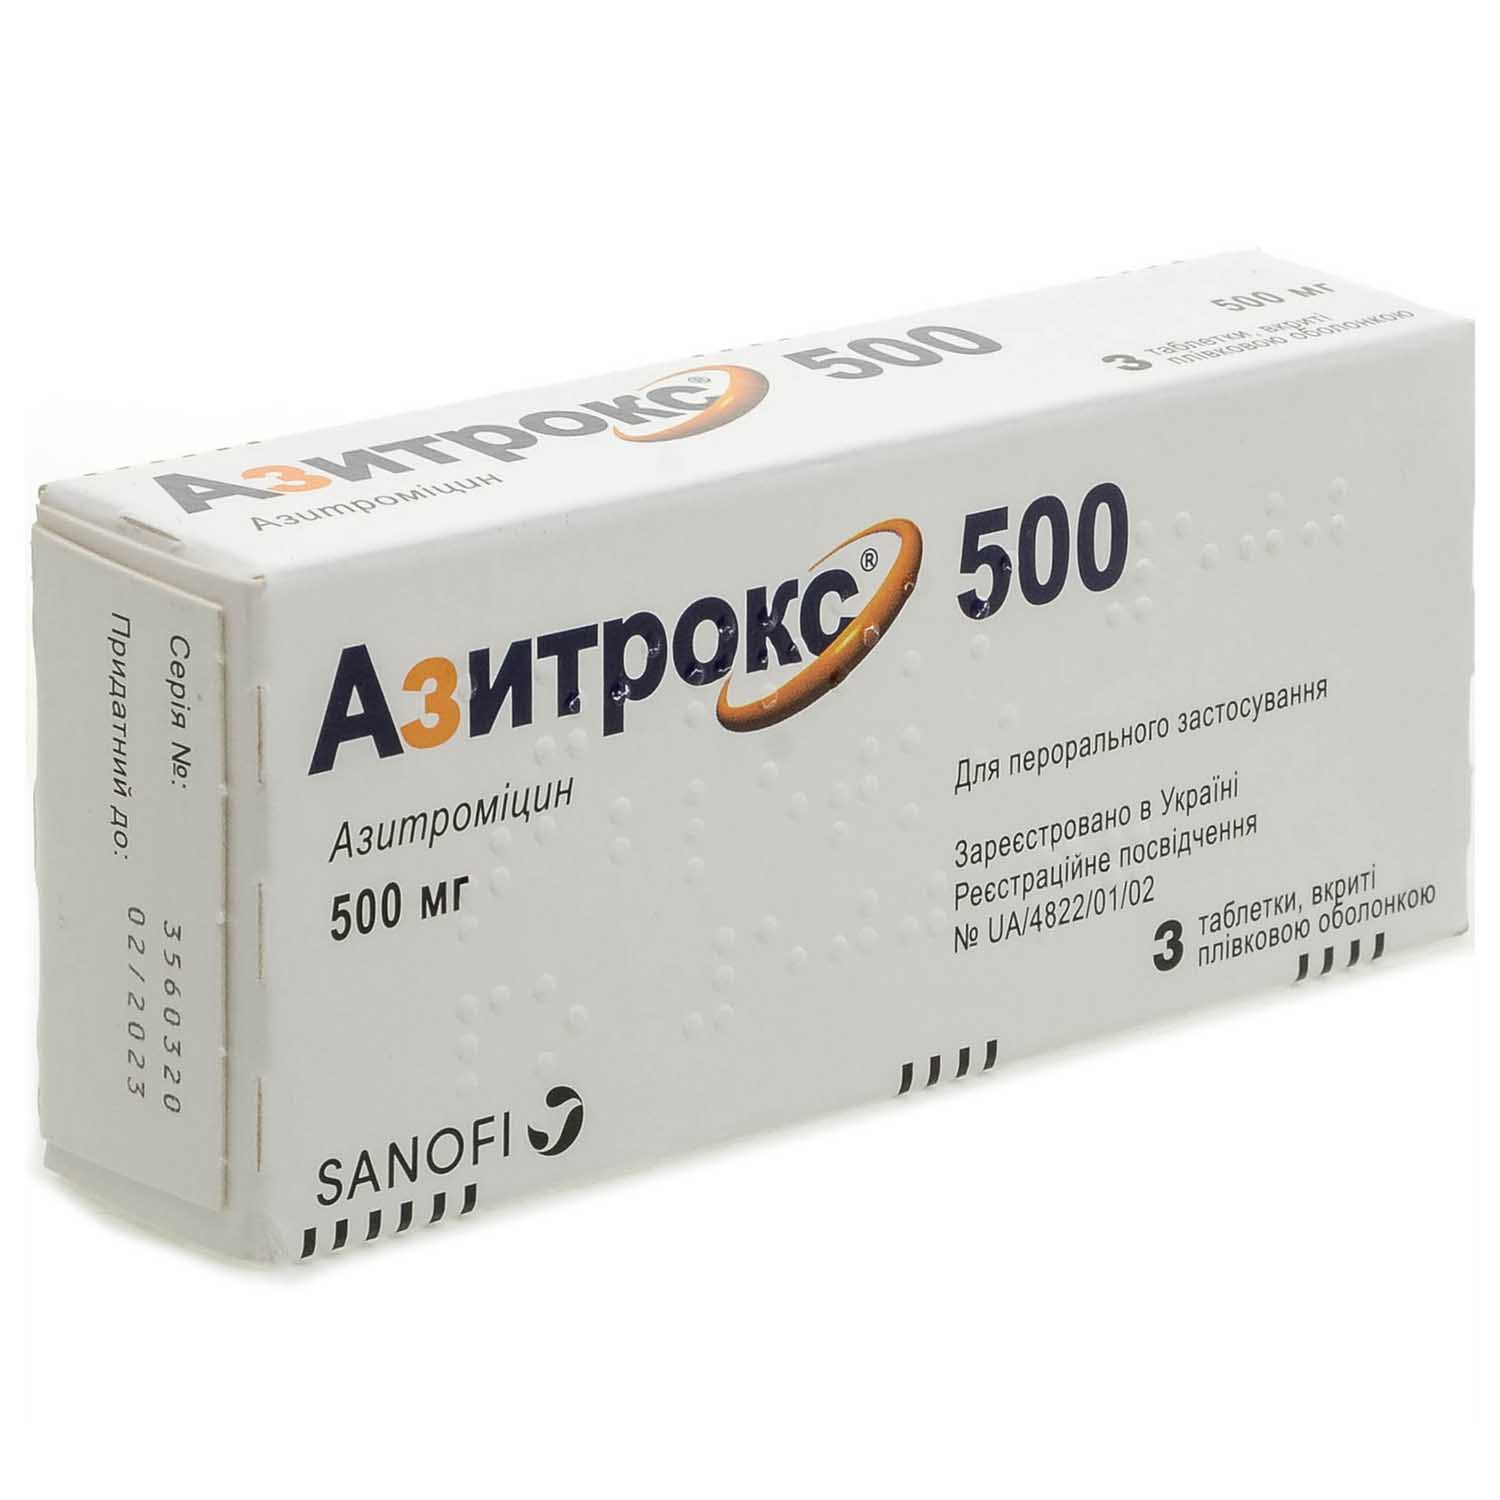 АЗИТРОКС® 500